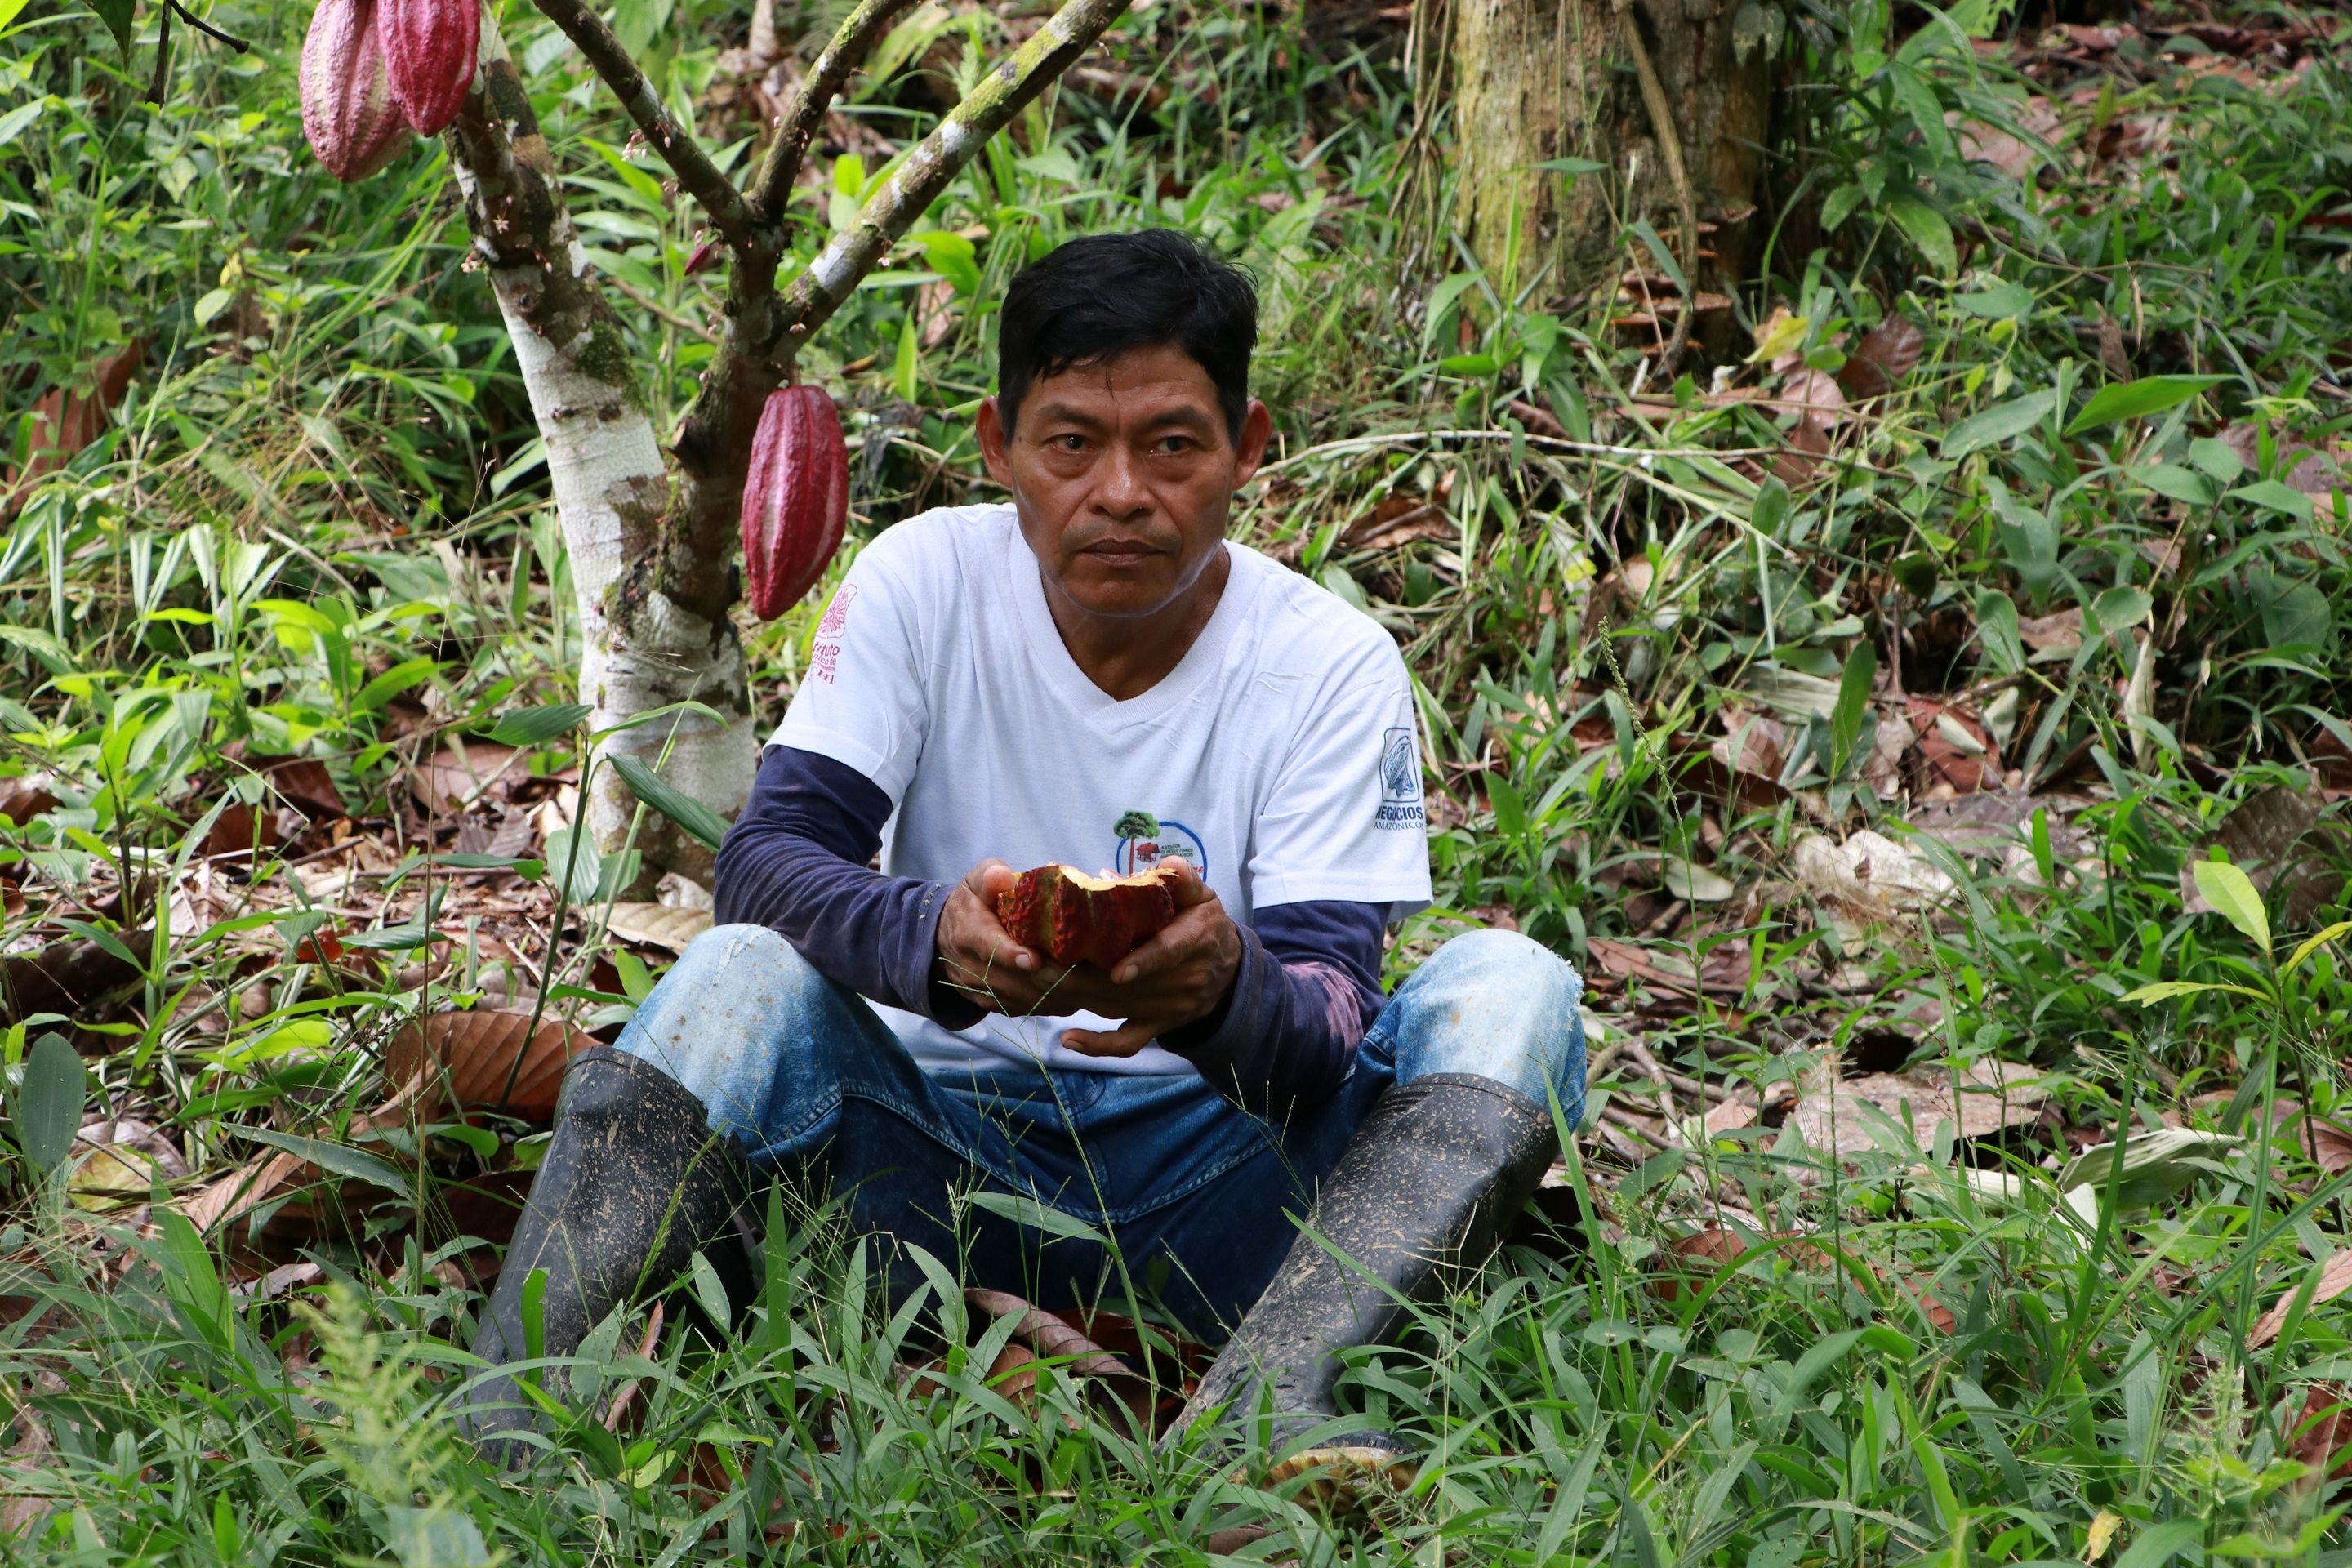 Los emprendimientos de los indígenas del Amazonas para sobrevivir y preservar